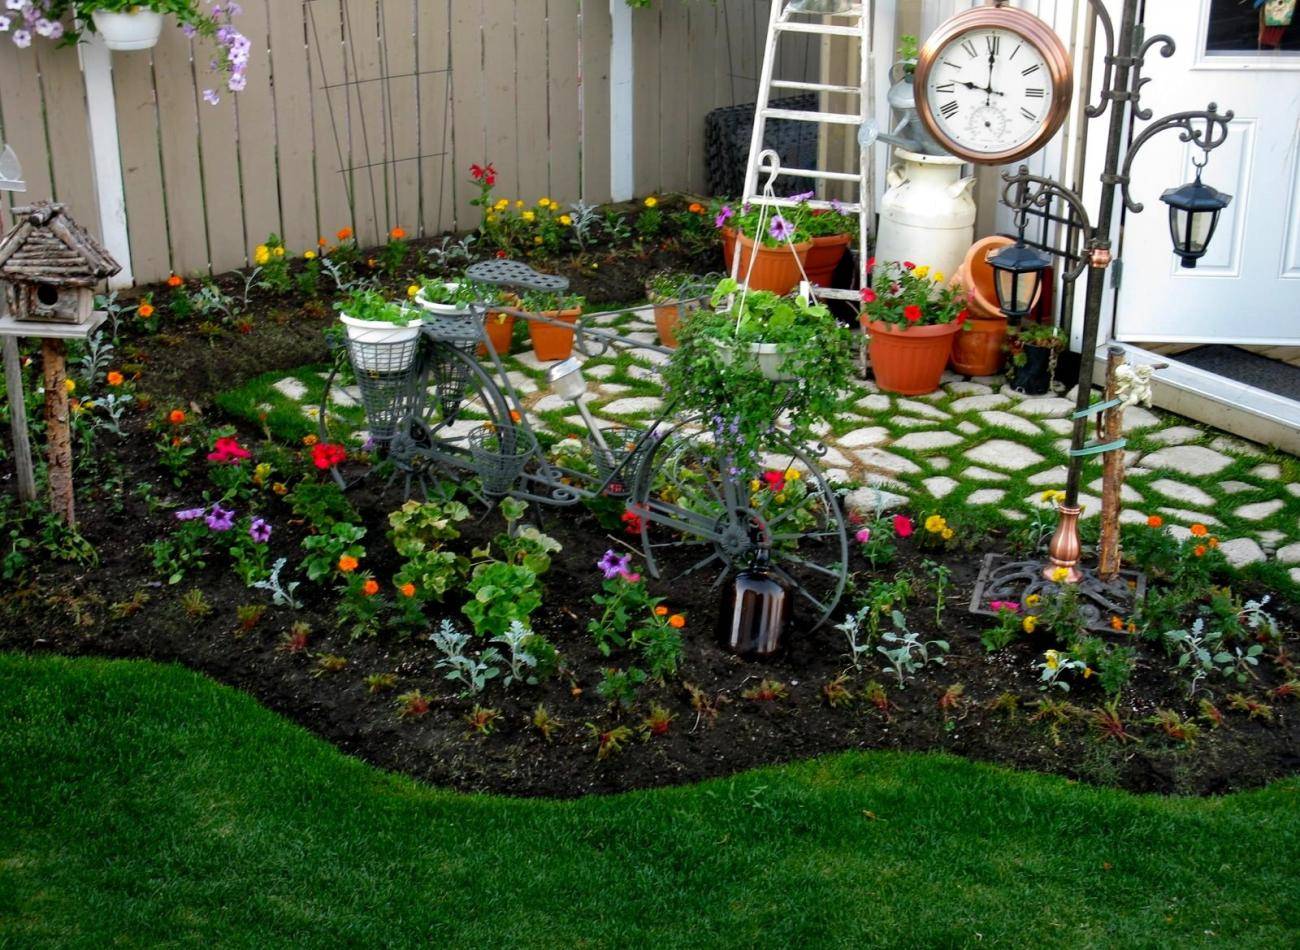 Как оформить сад своими руками — полезные советы и самые оригинальные идеи смотрите в обзоре на фото!